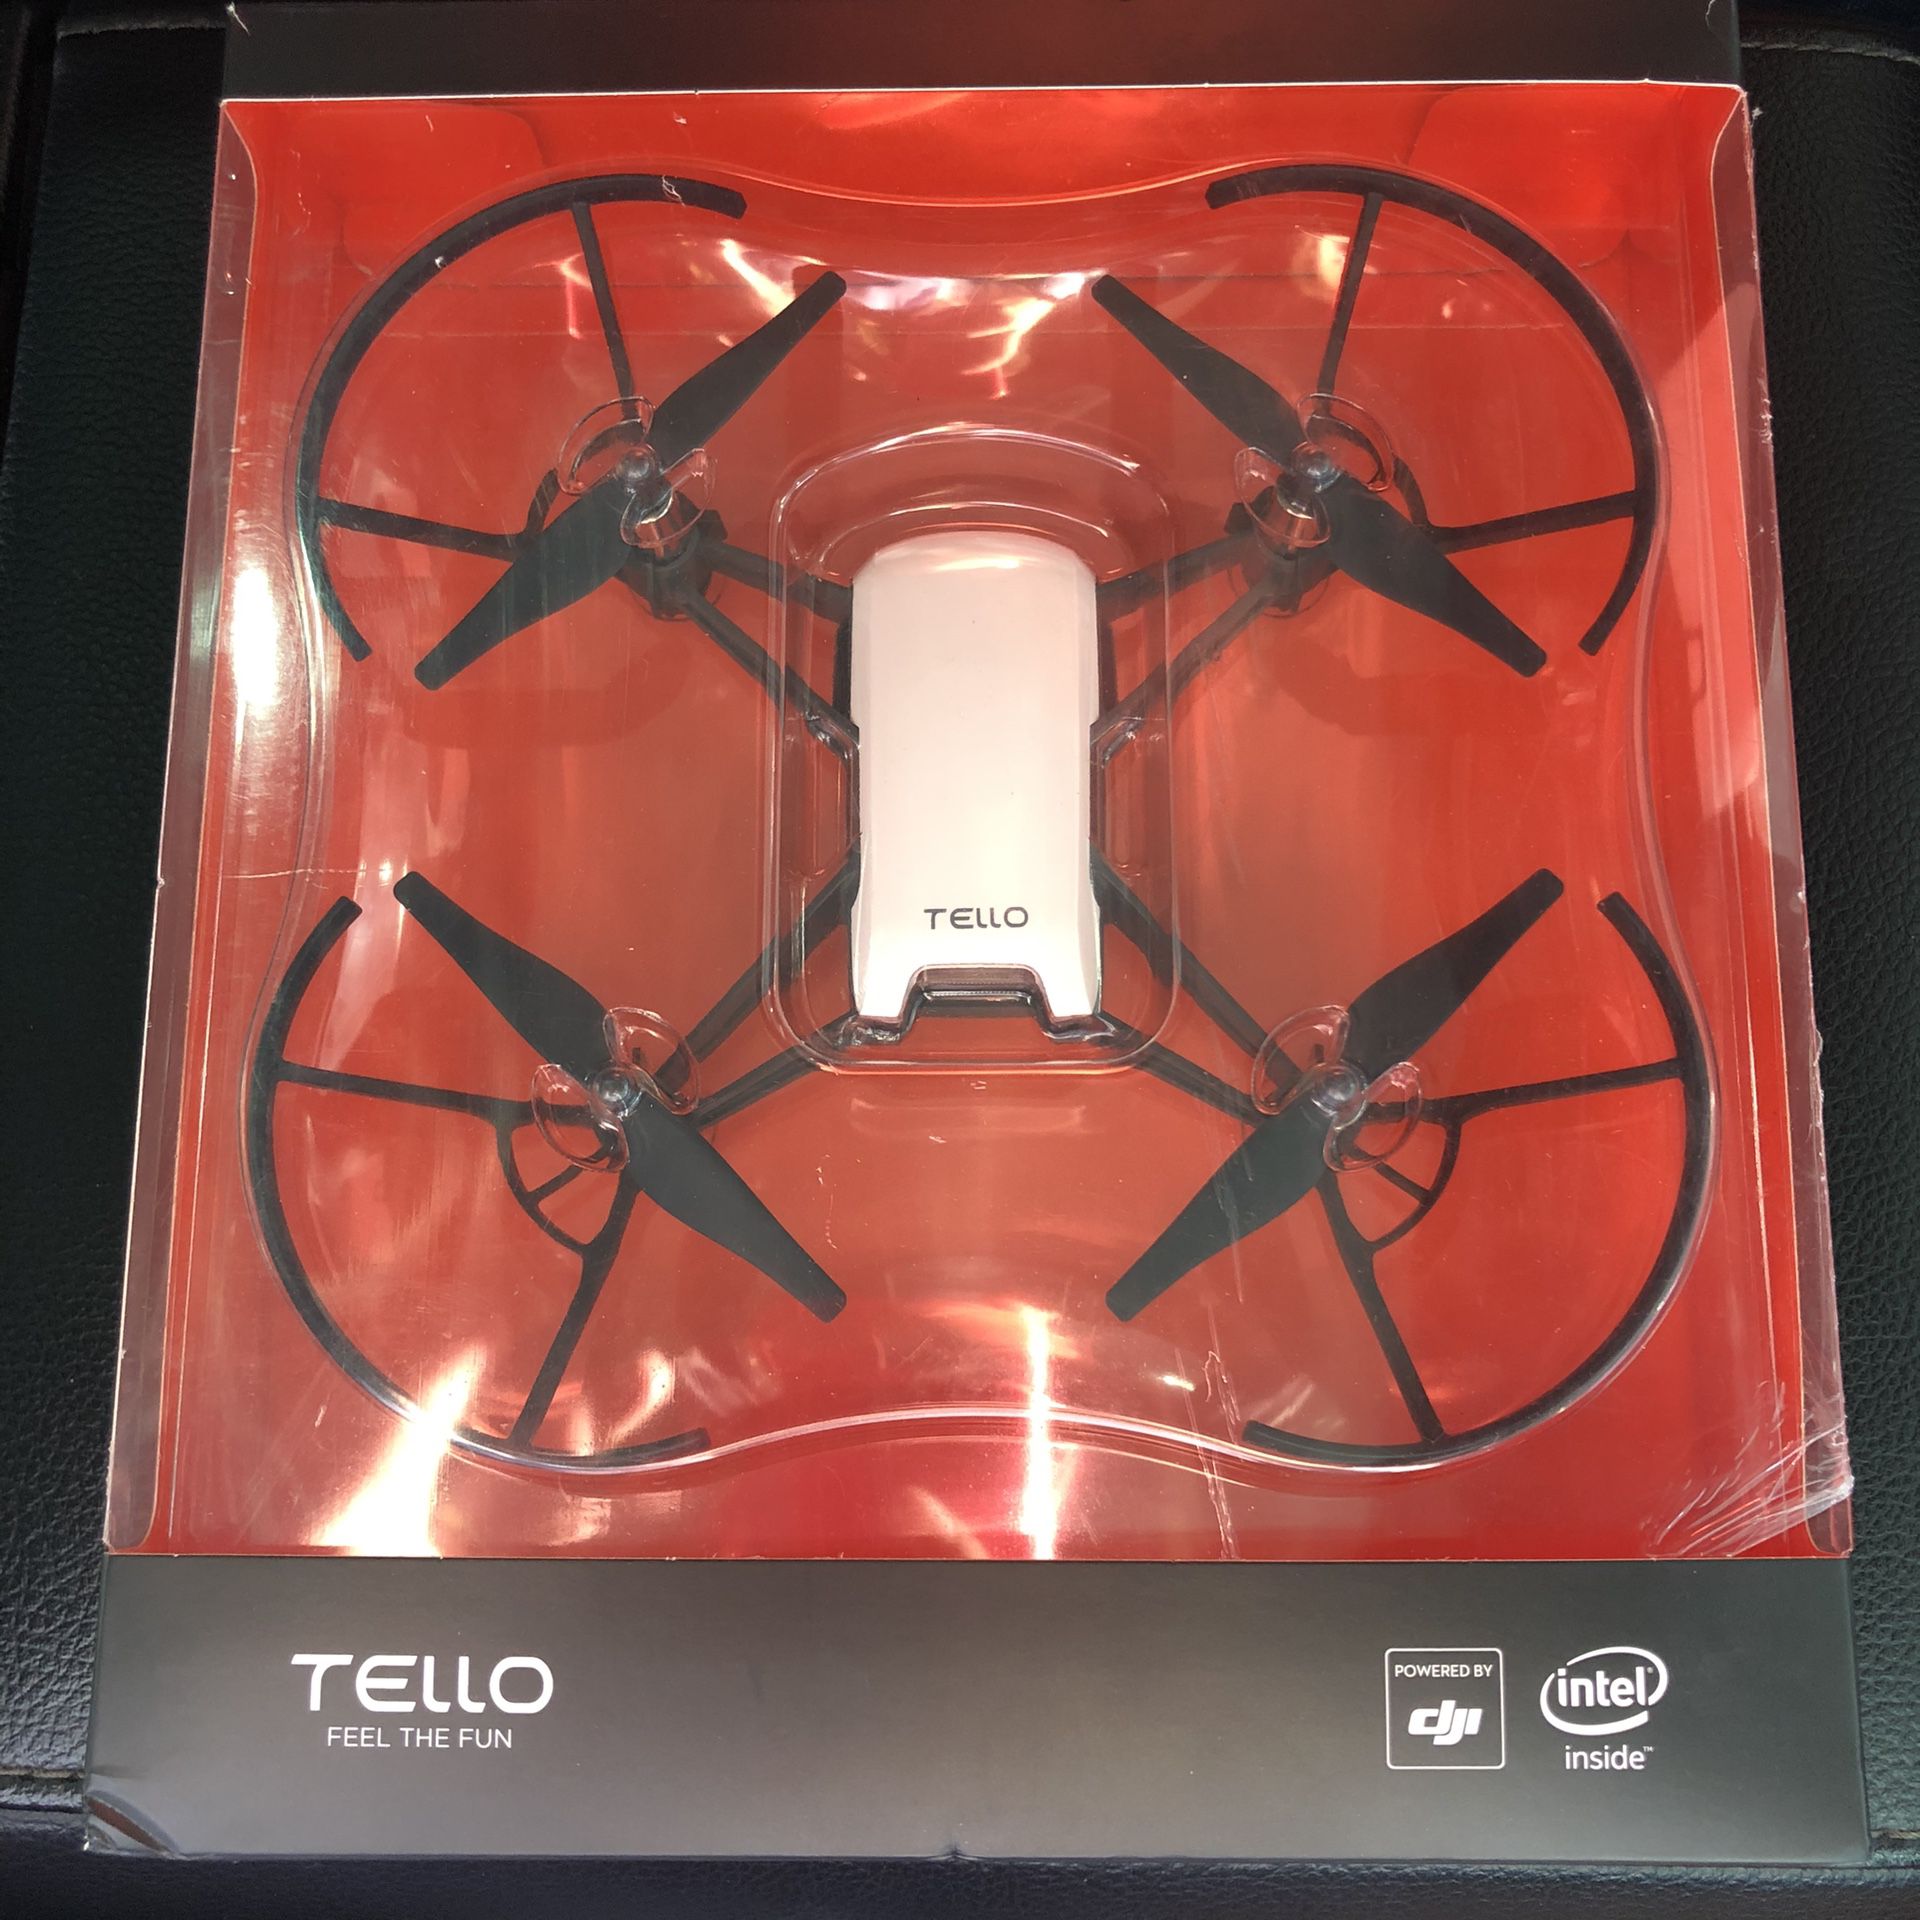 DJI Tello Drone quadcopter camera video